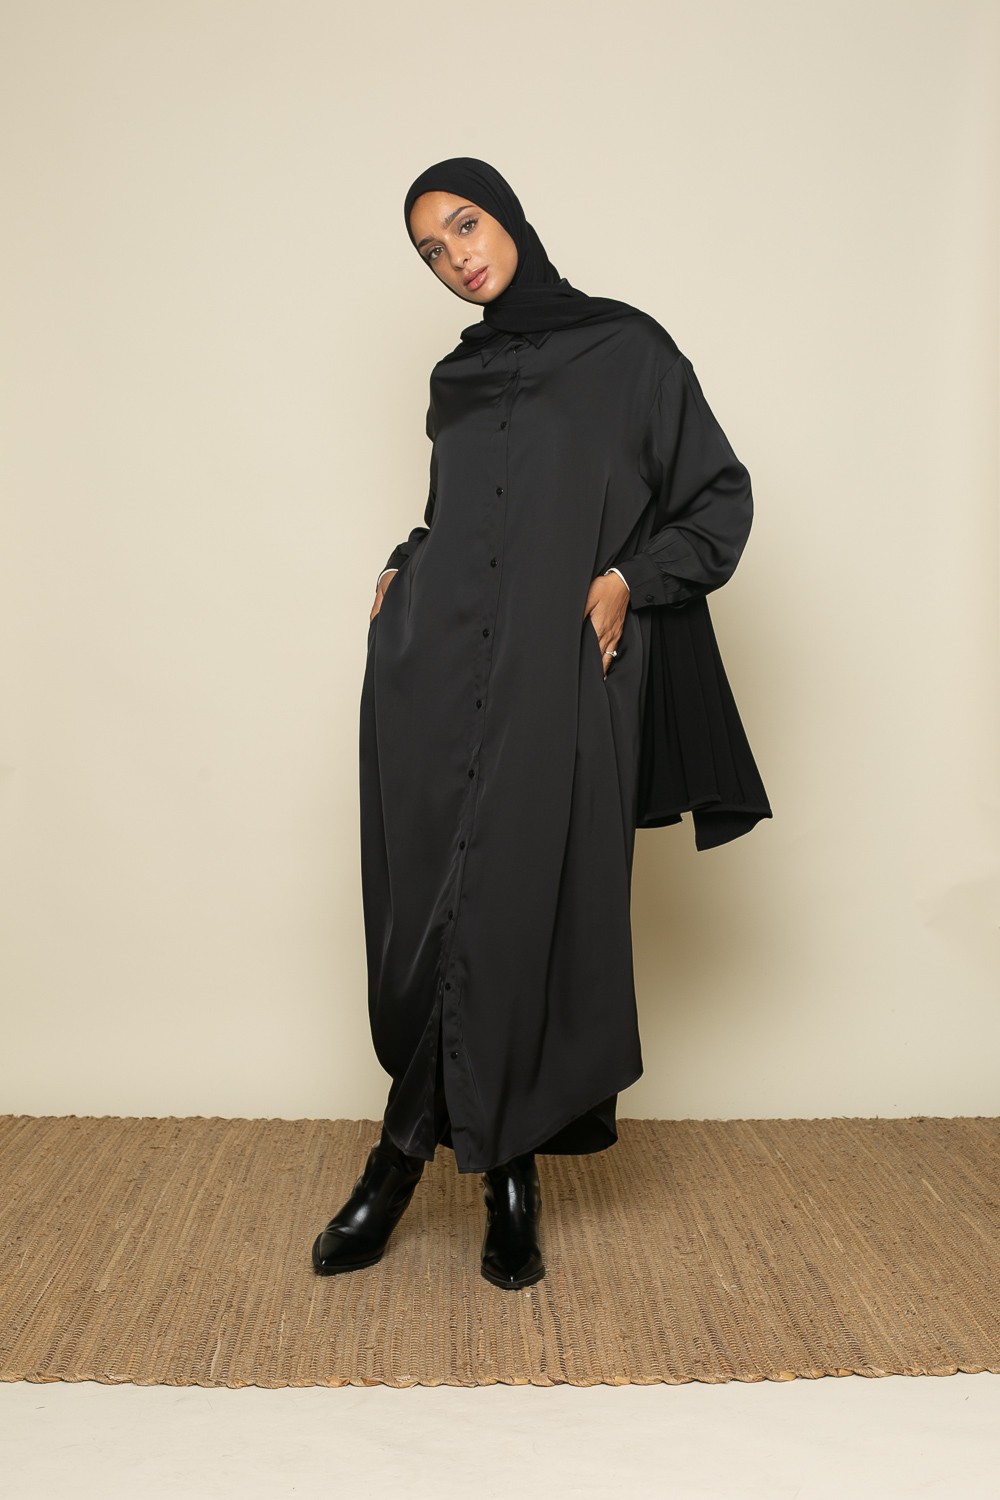 Robe chemise satiné noire chic et classe pour femme musulmane boutique hijab